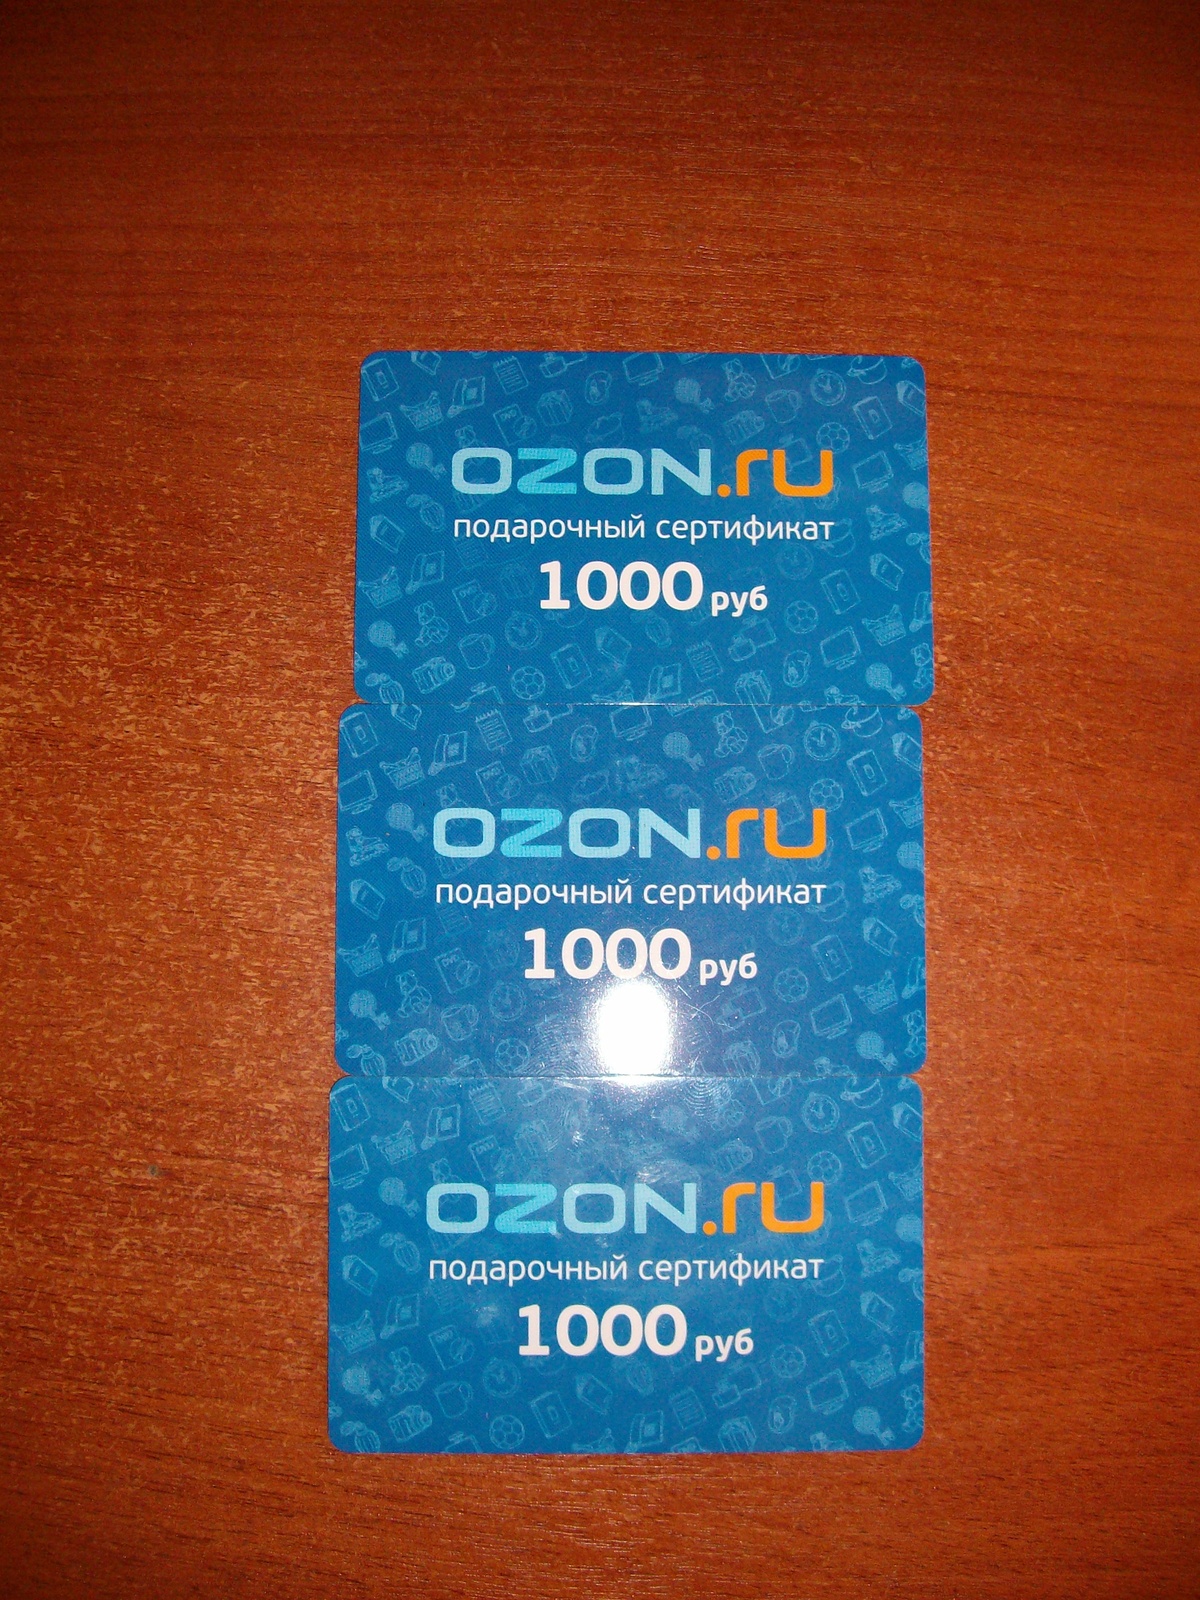 Заказать озон карту с бесплатной доставкой пластиковую. Подарочный сертификат Озон. Подарочная карта OZON. Сертификат Озон. Подарочный сертификат Озон 1000.